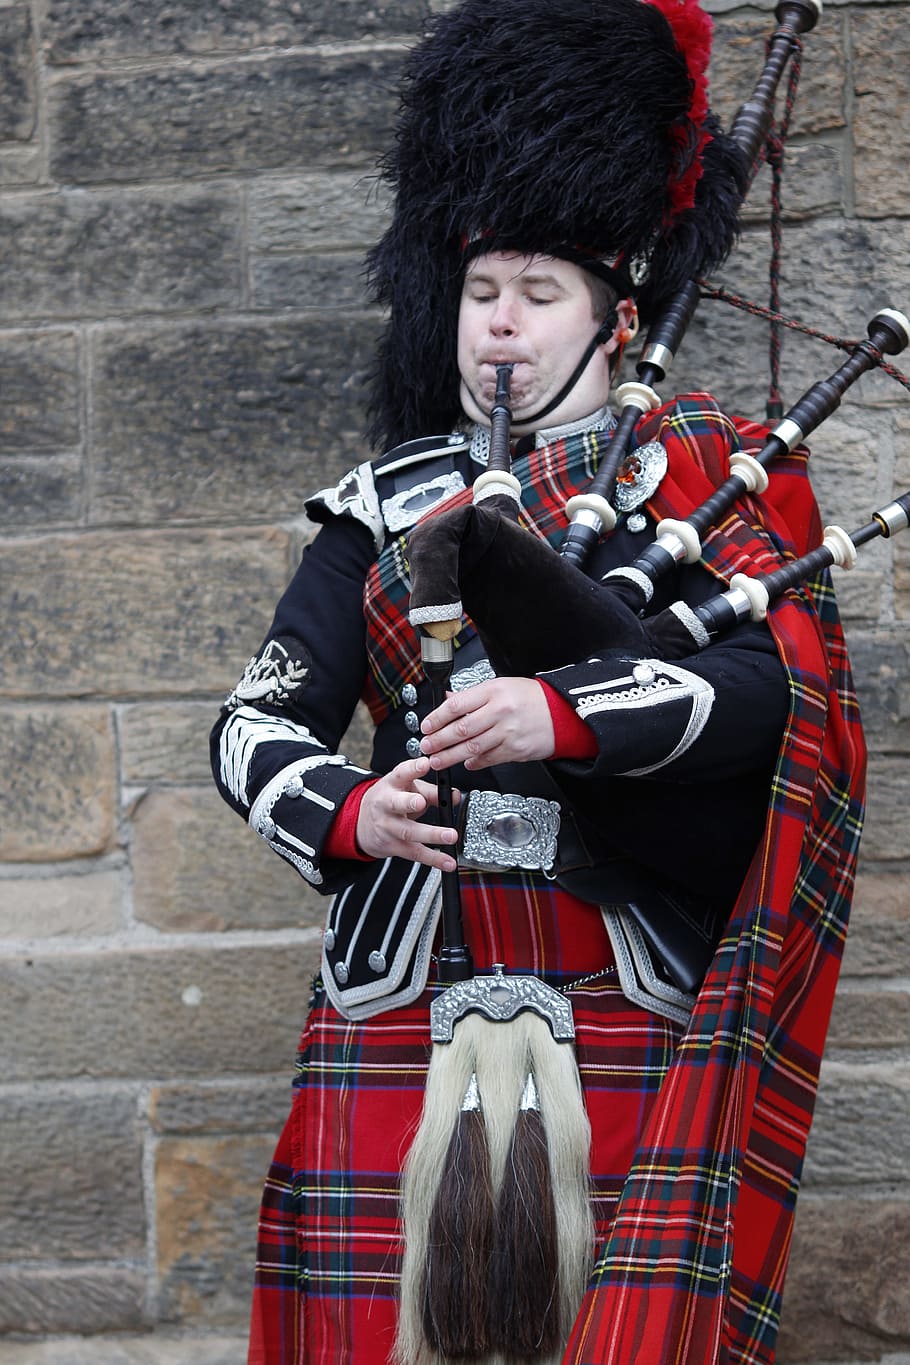 Scotland, Jock, Kilt, Bagpipes, musical instrument, edinburgh, music, musician, wind instrument, street musicians